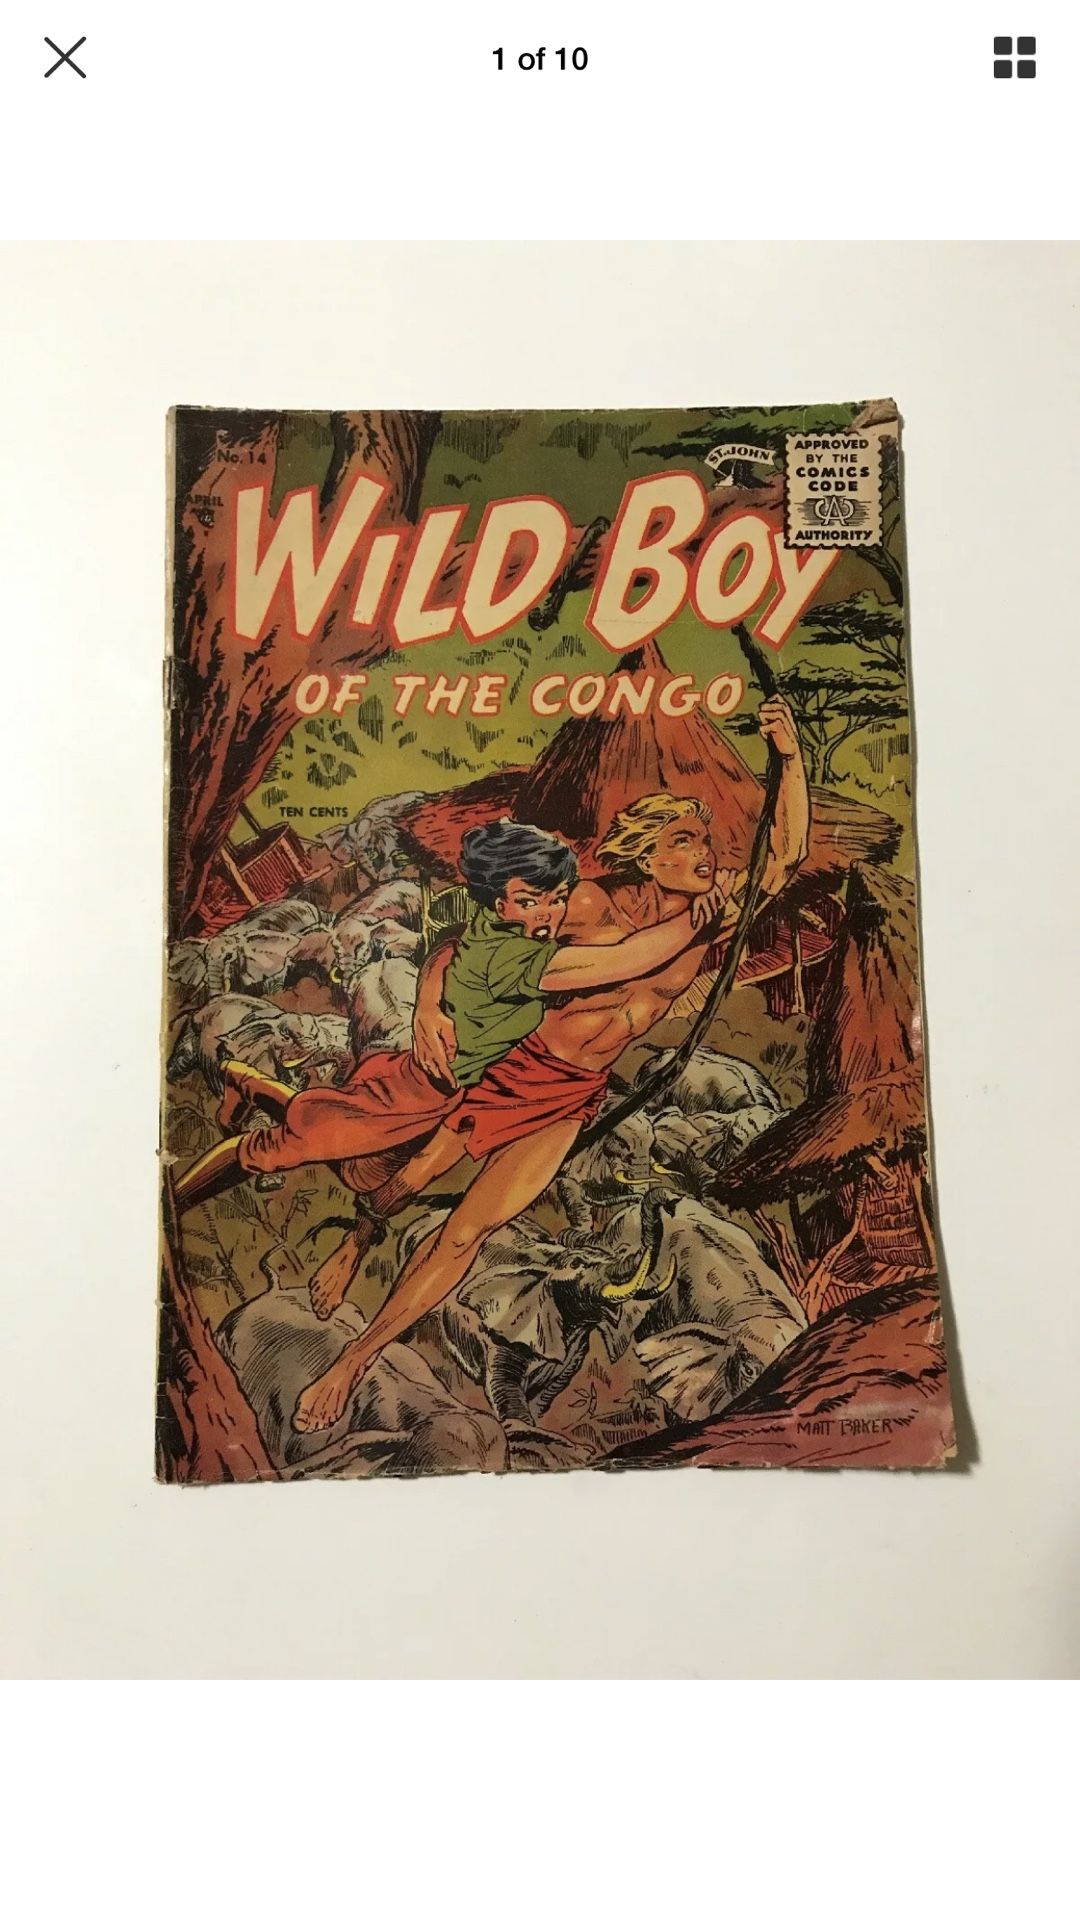 Wild Boy of the Congo #14 1955-St John-Matt Baker cover art